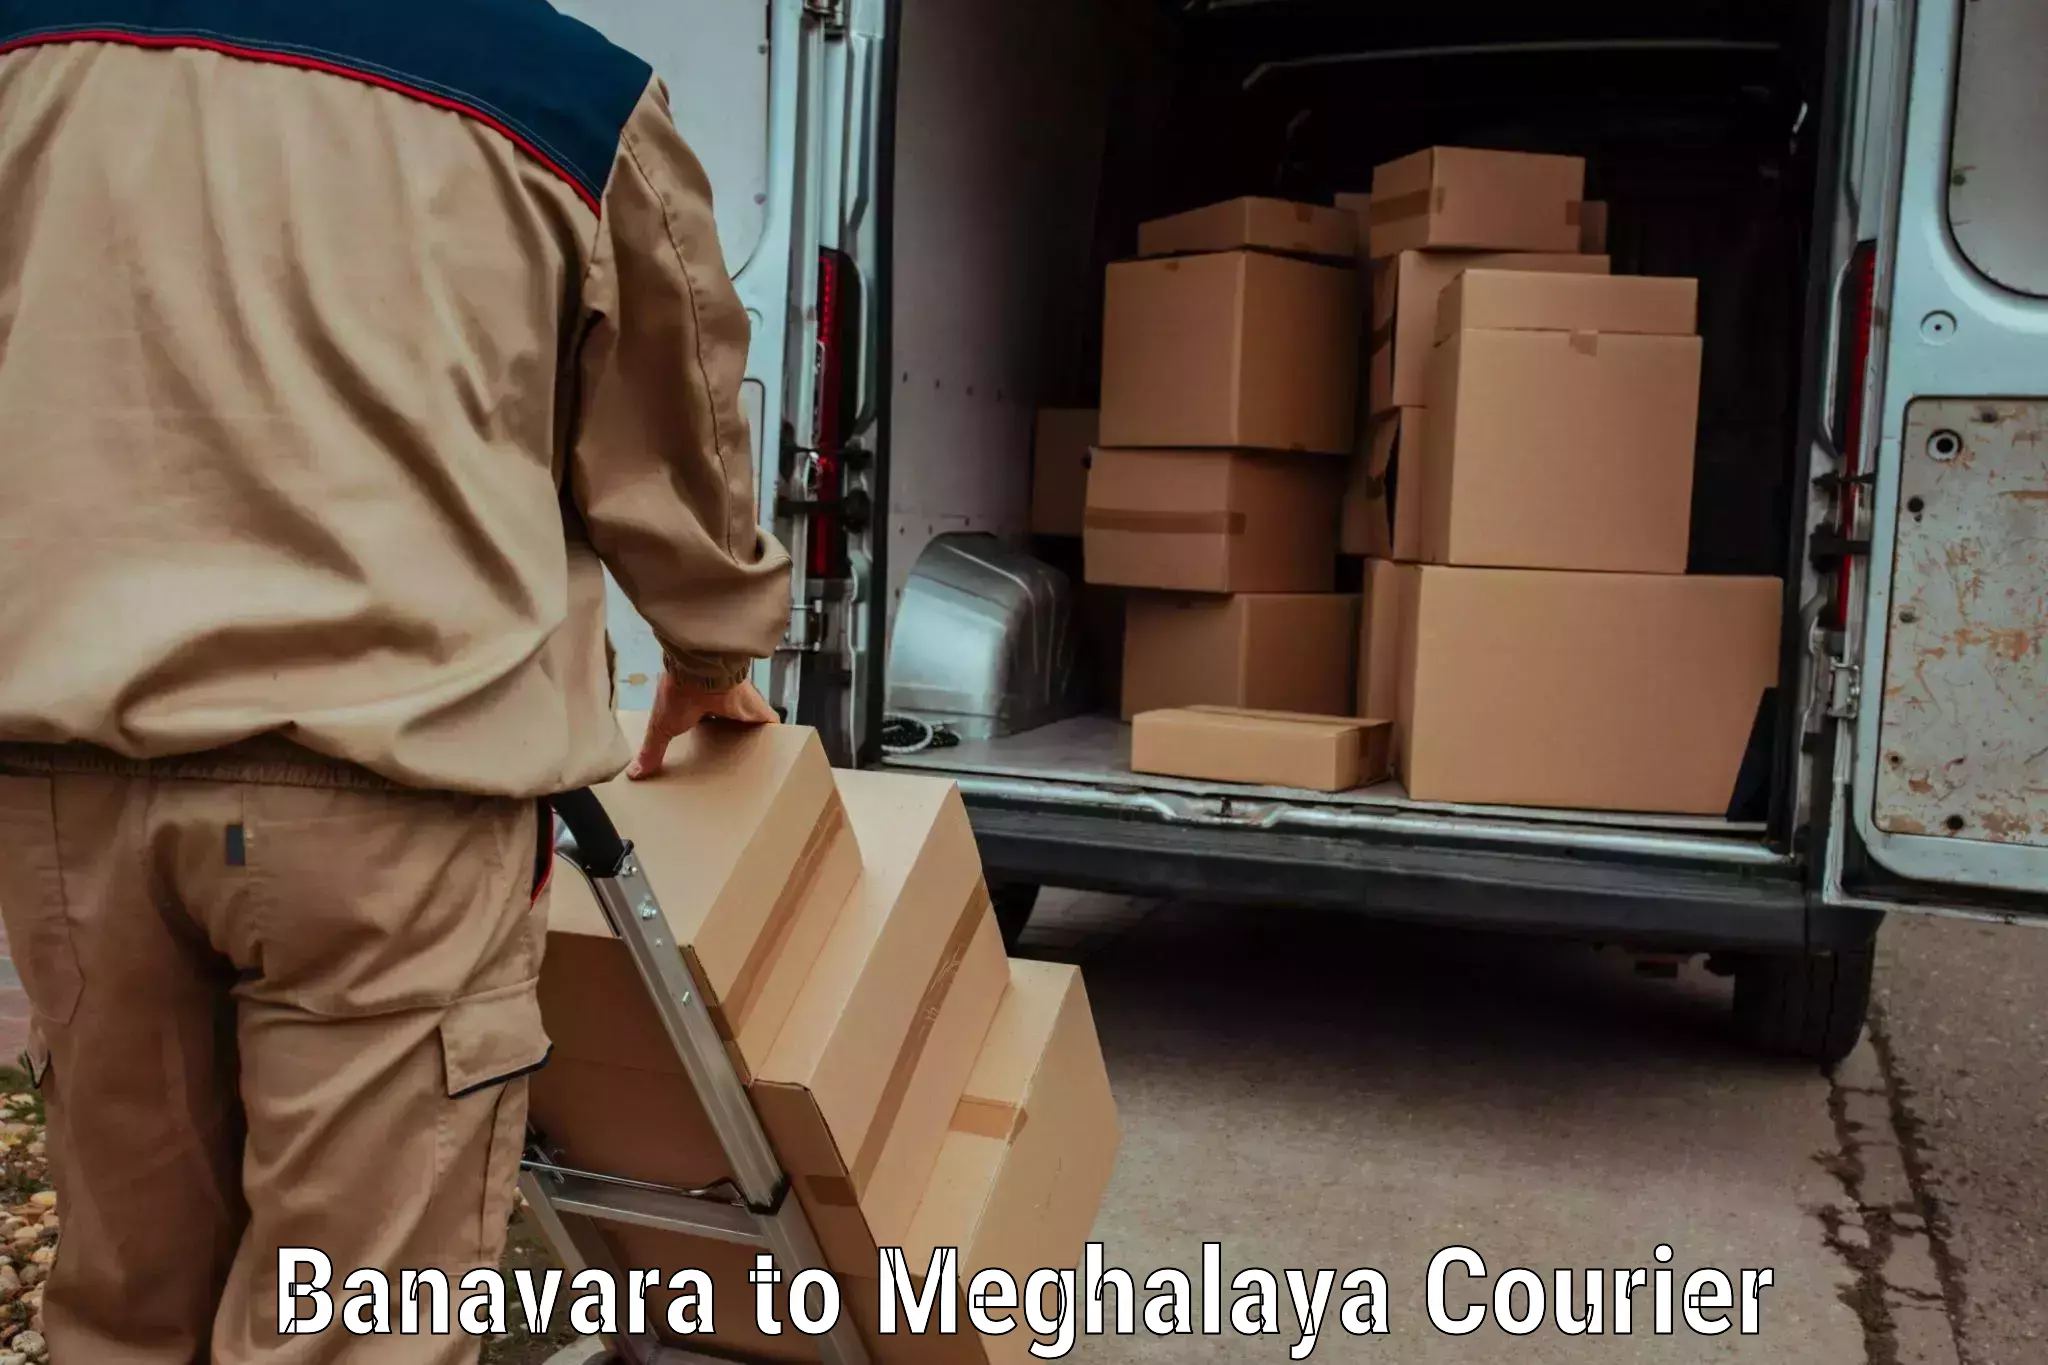 Holiday shipping services Banavara to Shillong